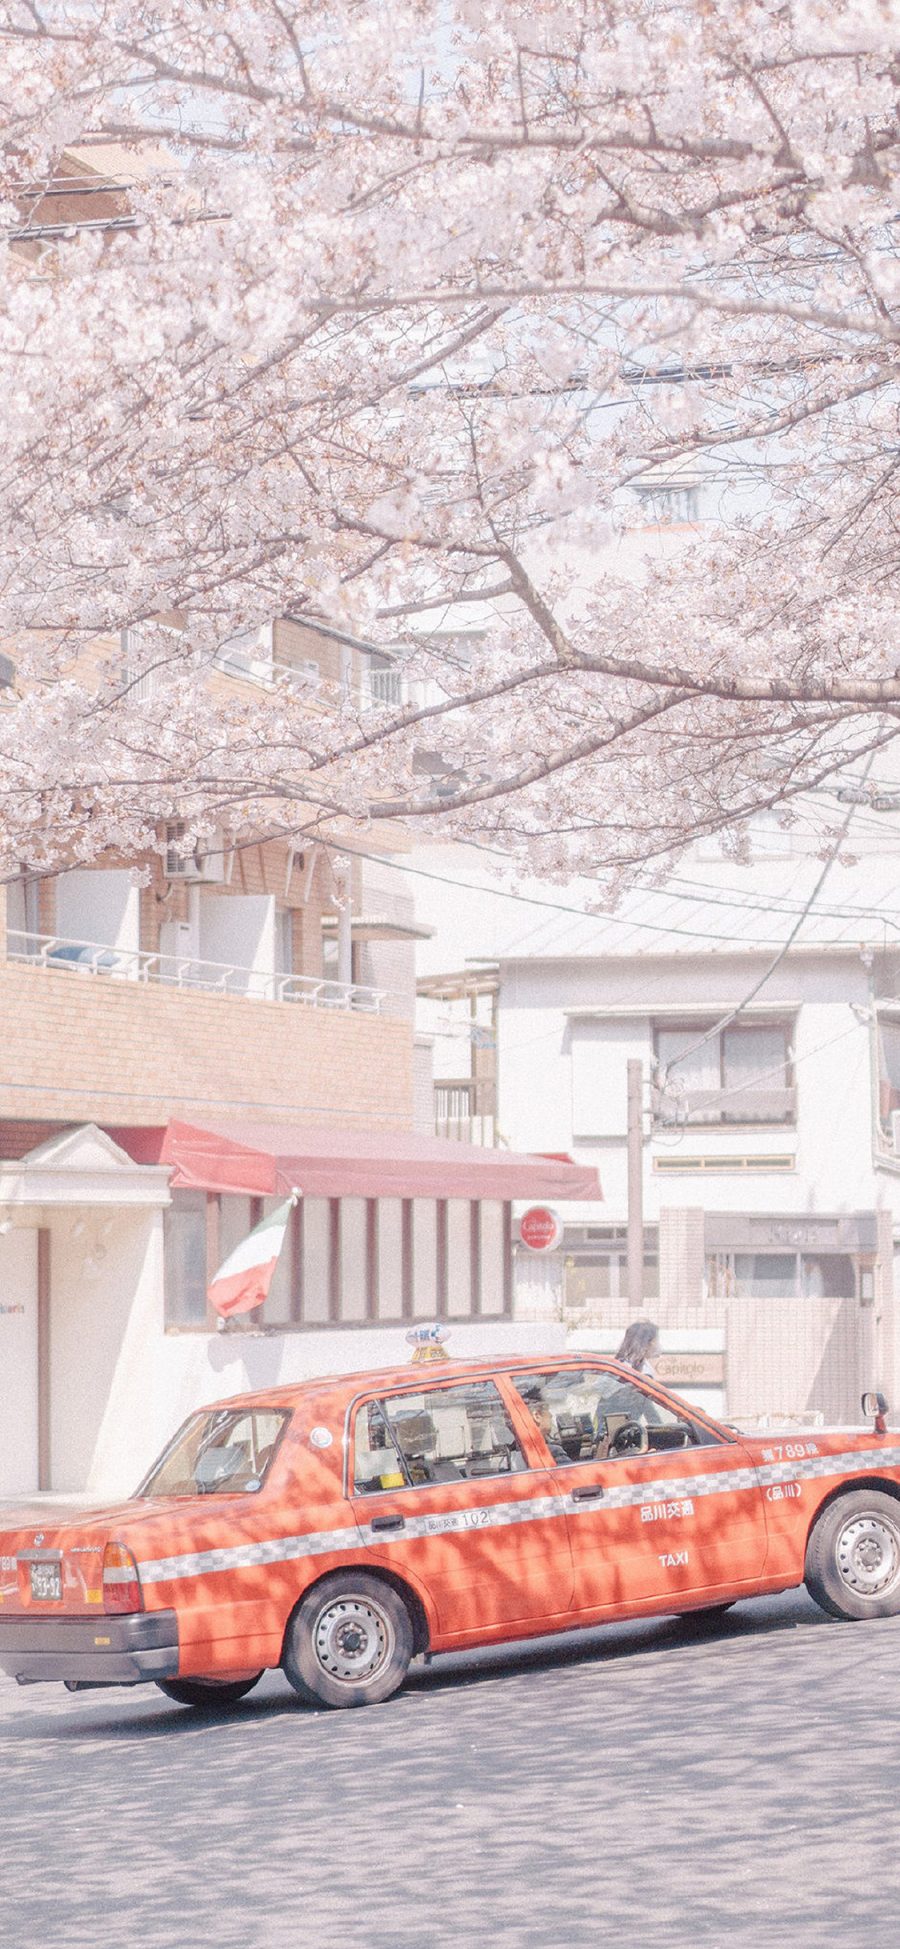 [2436×1125]樱花 鲜花 盛开 粉色 春天 的士车 街道 苹果手机壁纸图片